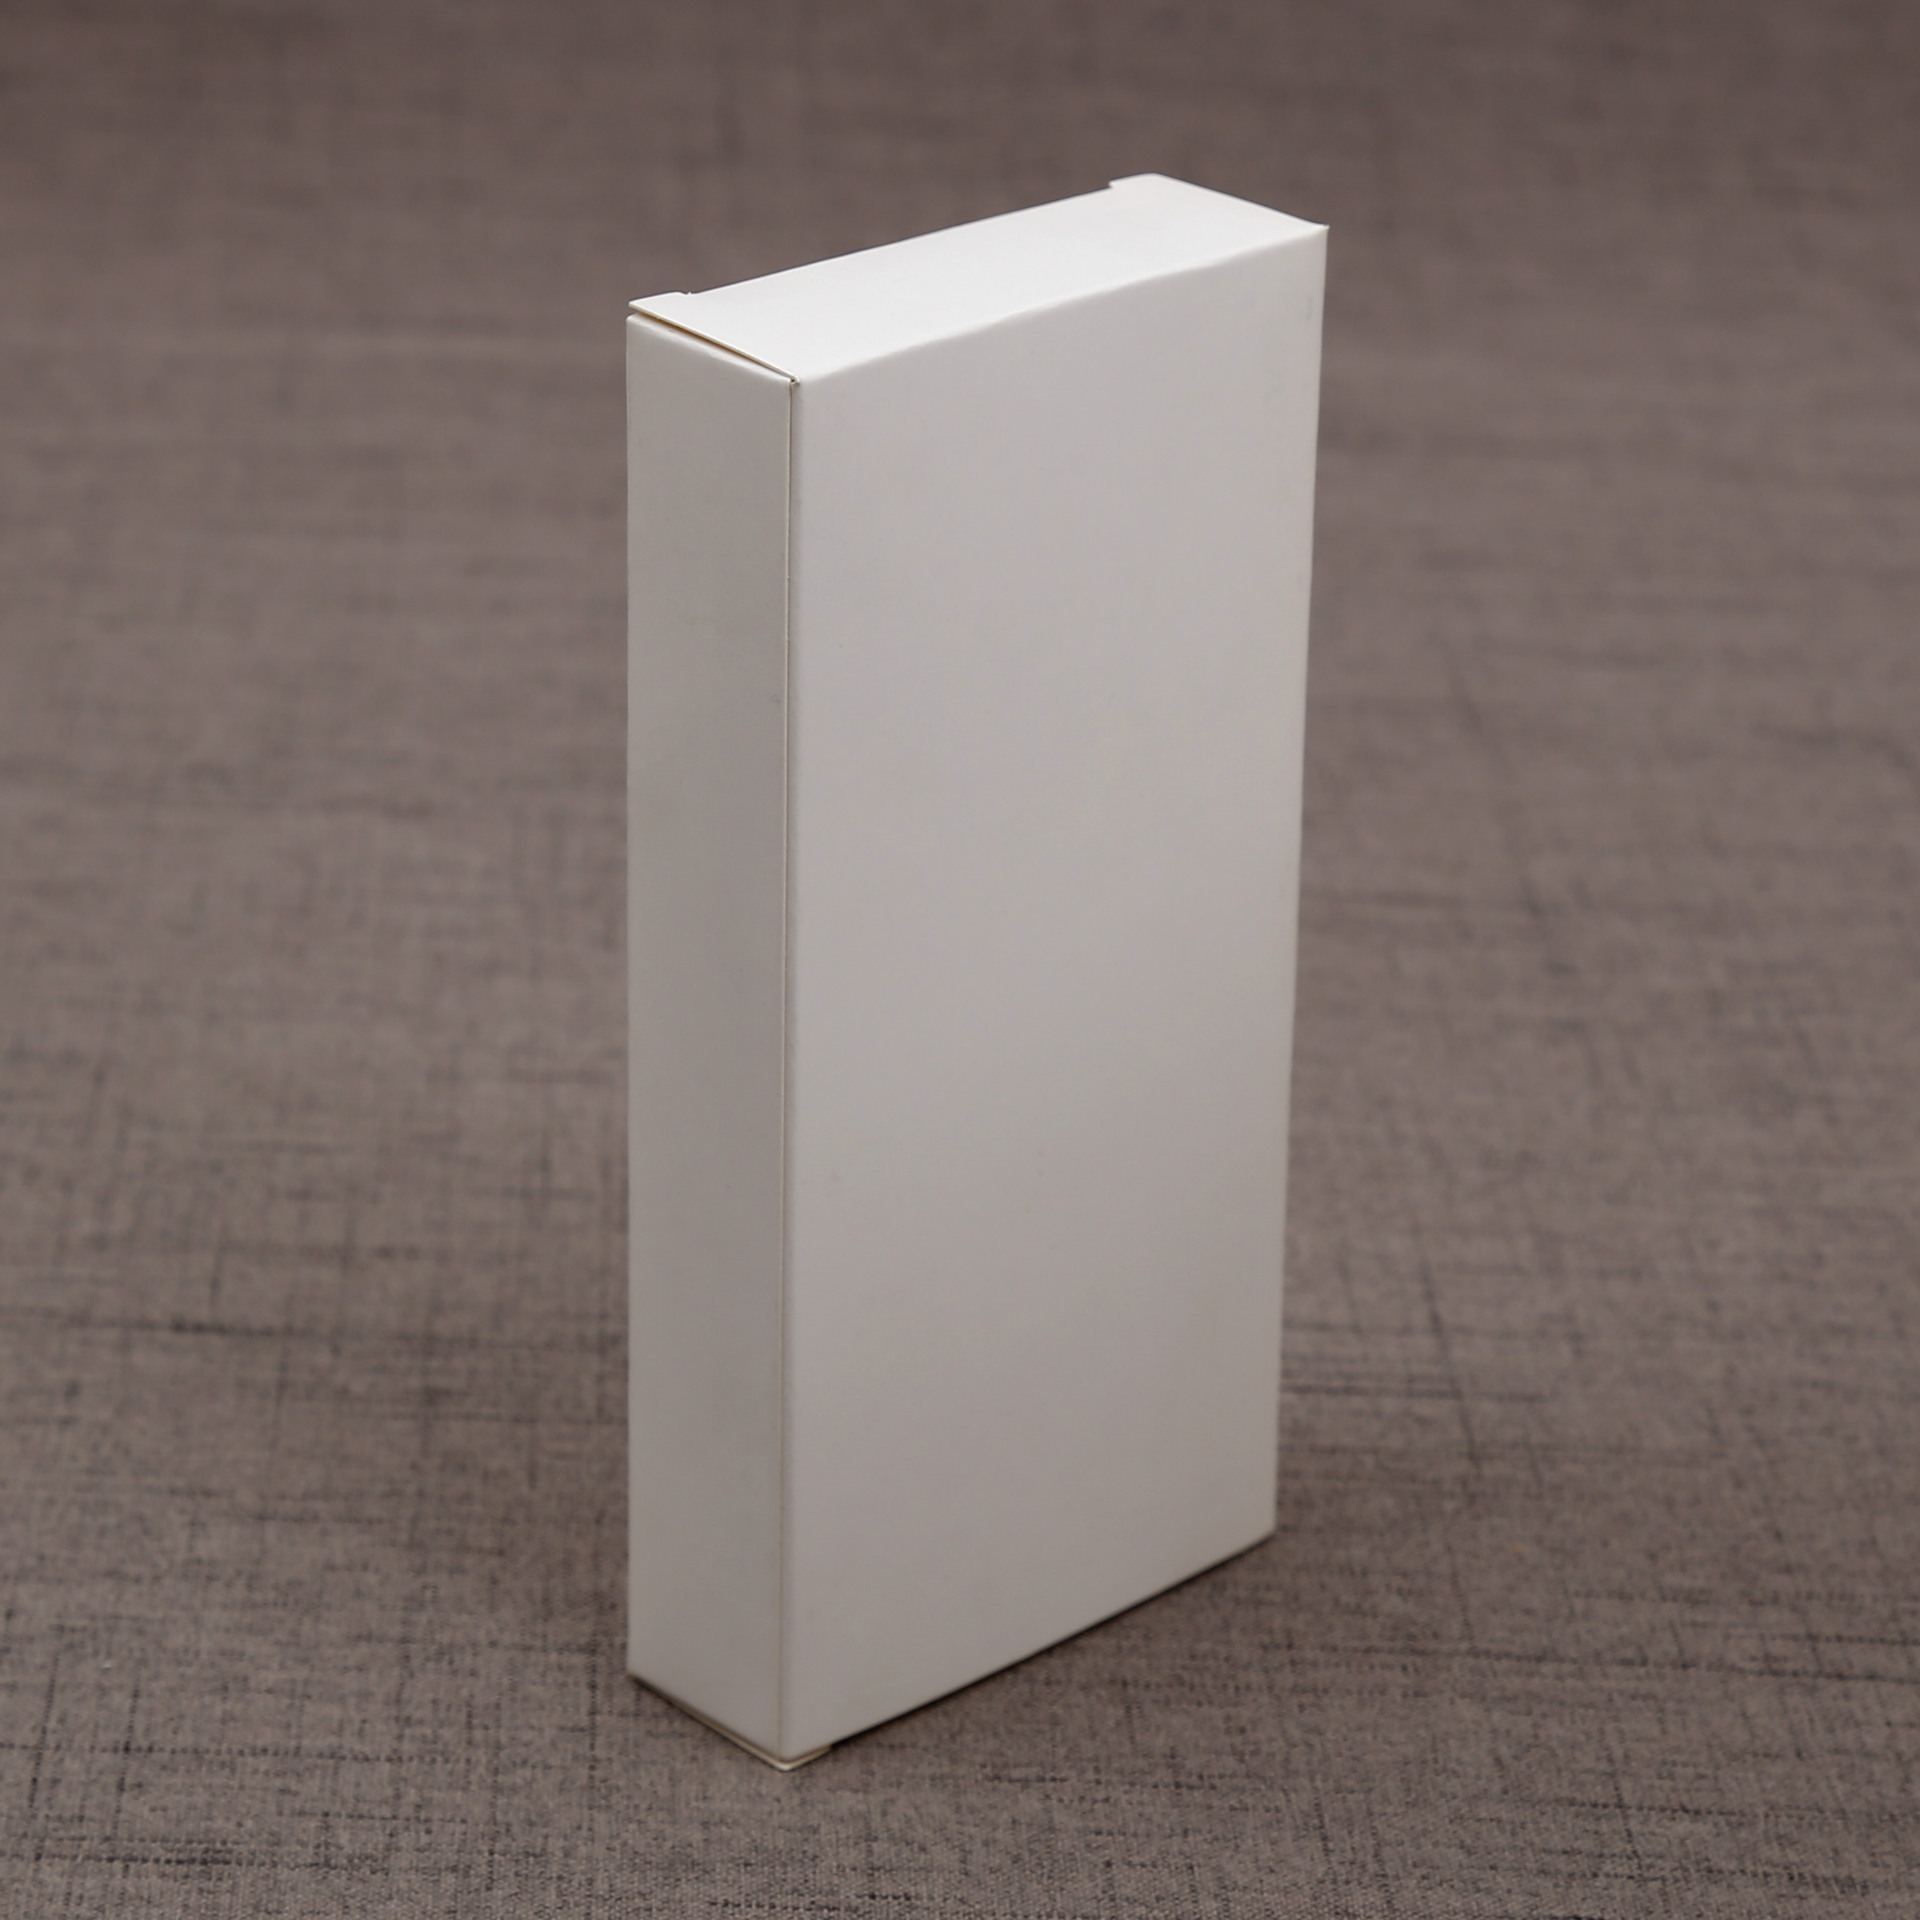 长方形盒子包装设计贴图模板PSD样机模型110x60x30mm Box mockup-优社Uther